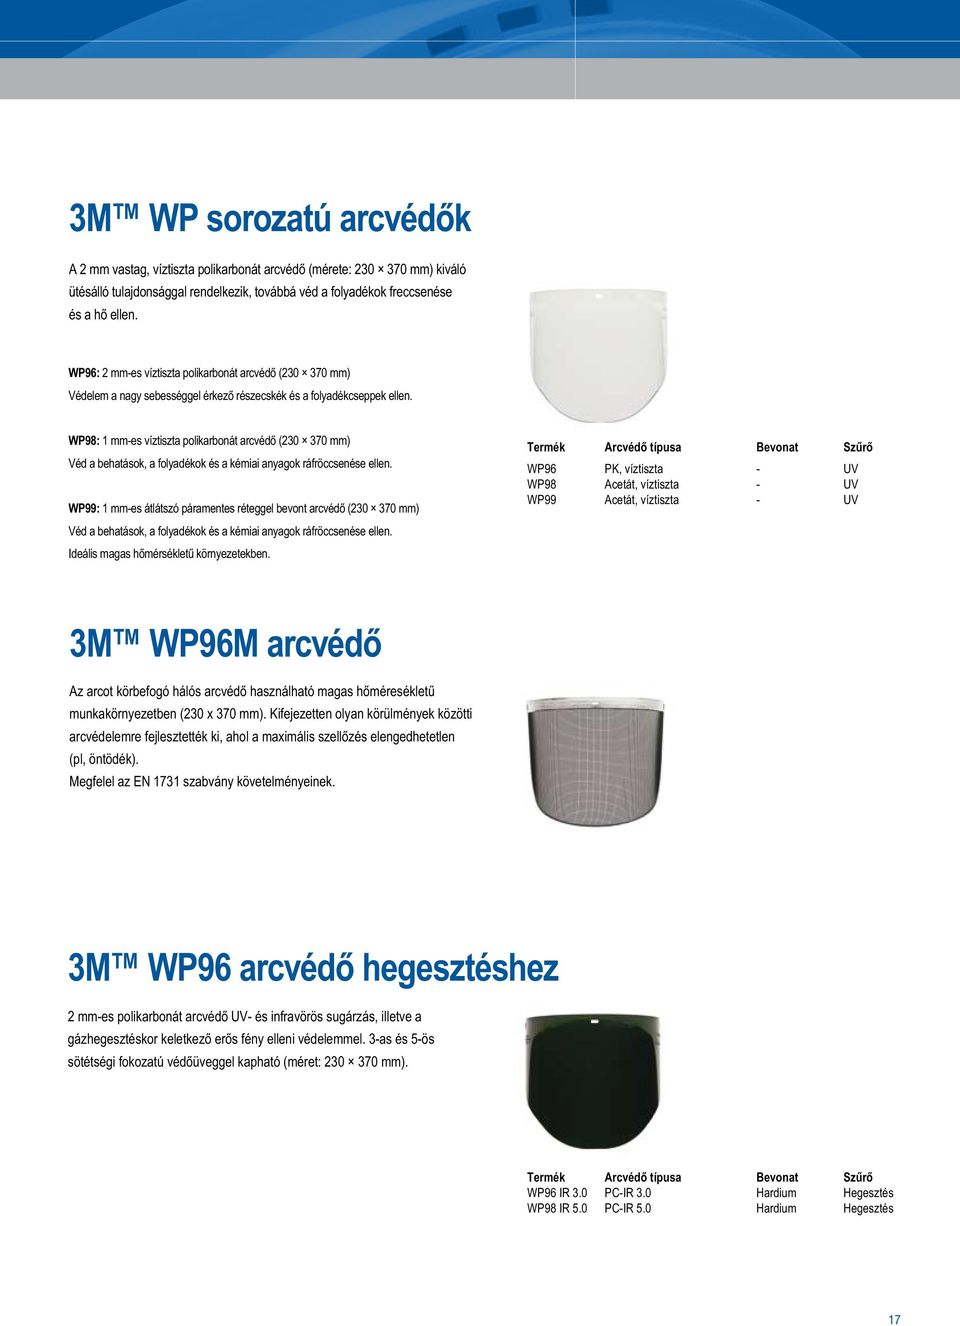 WP98: 1 mm-es víztiszta polikarbonát arcvédő (230 370 mm) Véd a behatások, a folyadékok és a kémiai anyagok ráfröccsenése ellen.